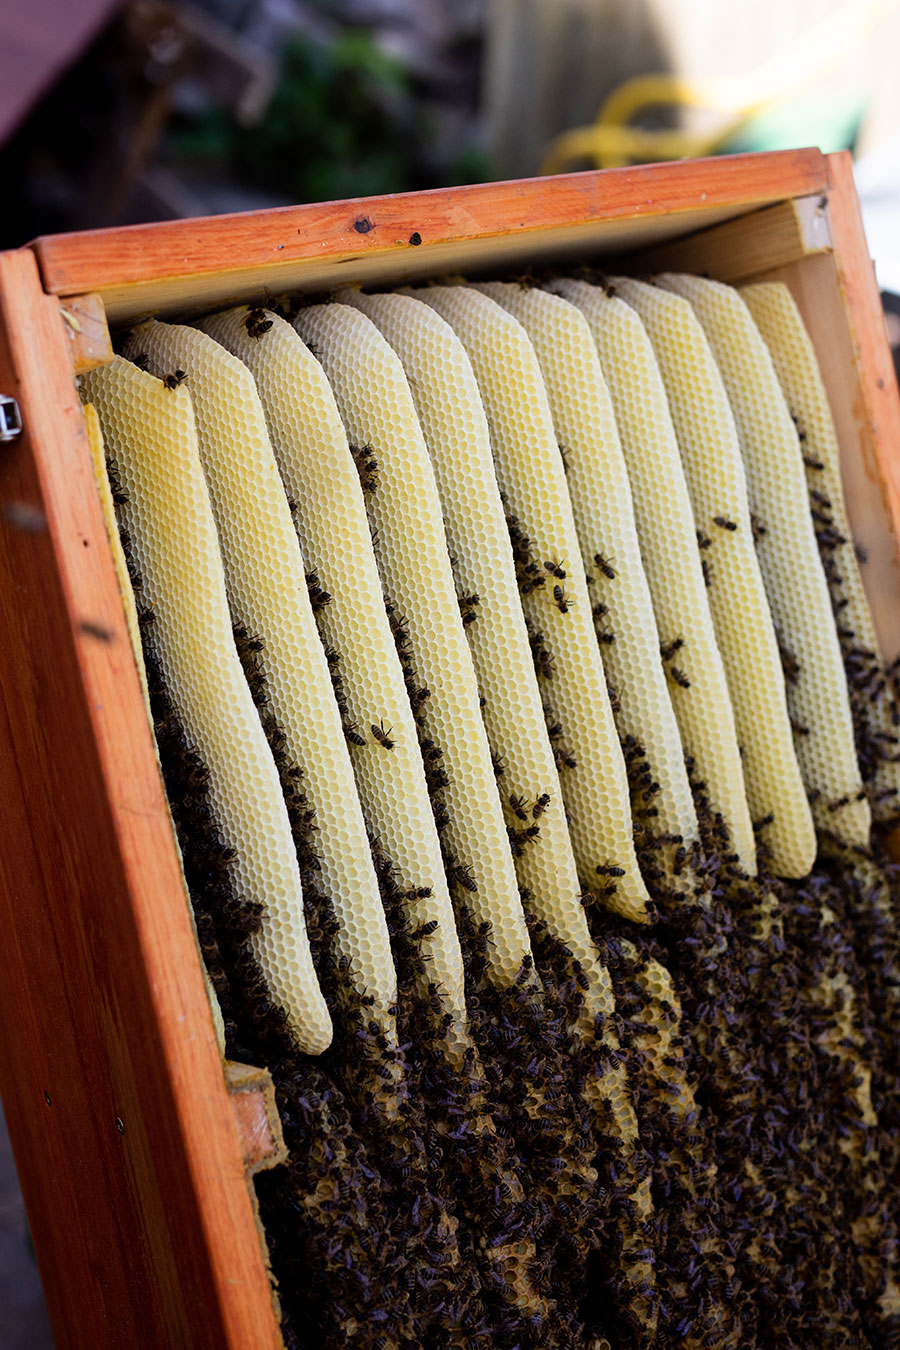 Honigraum, Honigleisten, Bienenkiste, wesensgemäße Bienenhaltung, Mellifera, Schwarmkontrolle, Spielnäpfchen